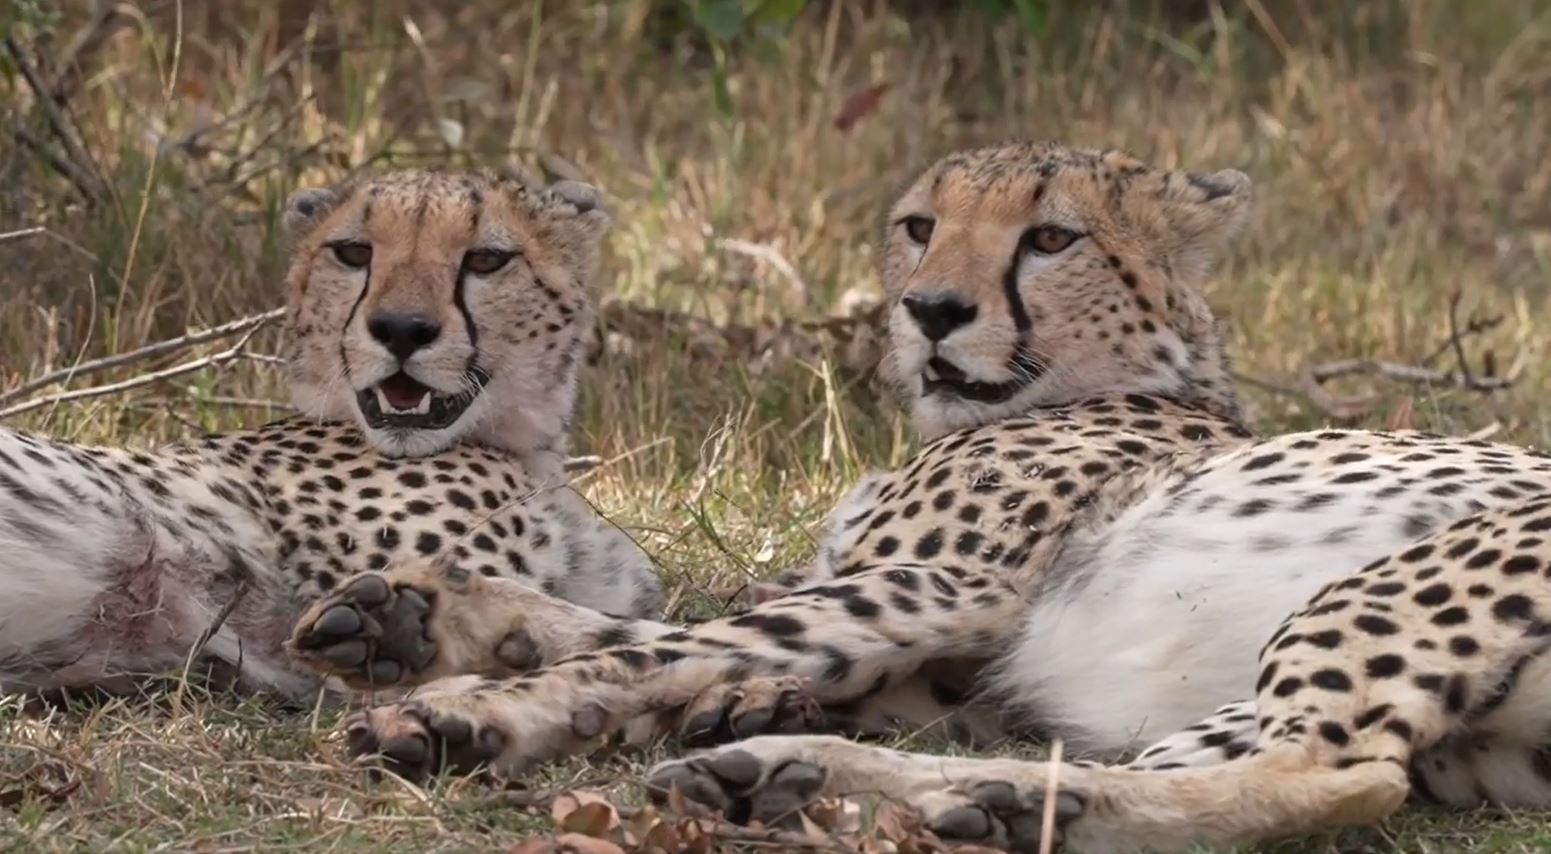 In der Masai Mara sehen wir relativ häufig Geparde und Löwen. Hin und wieder finden wir auch einen Leoparden oder eine Servalkatze.